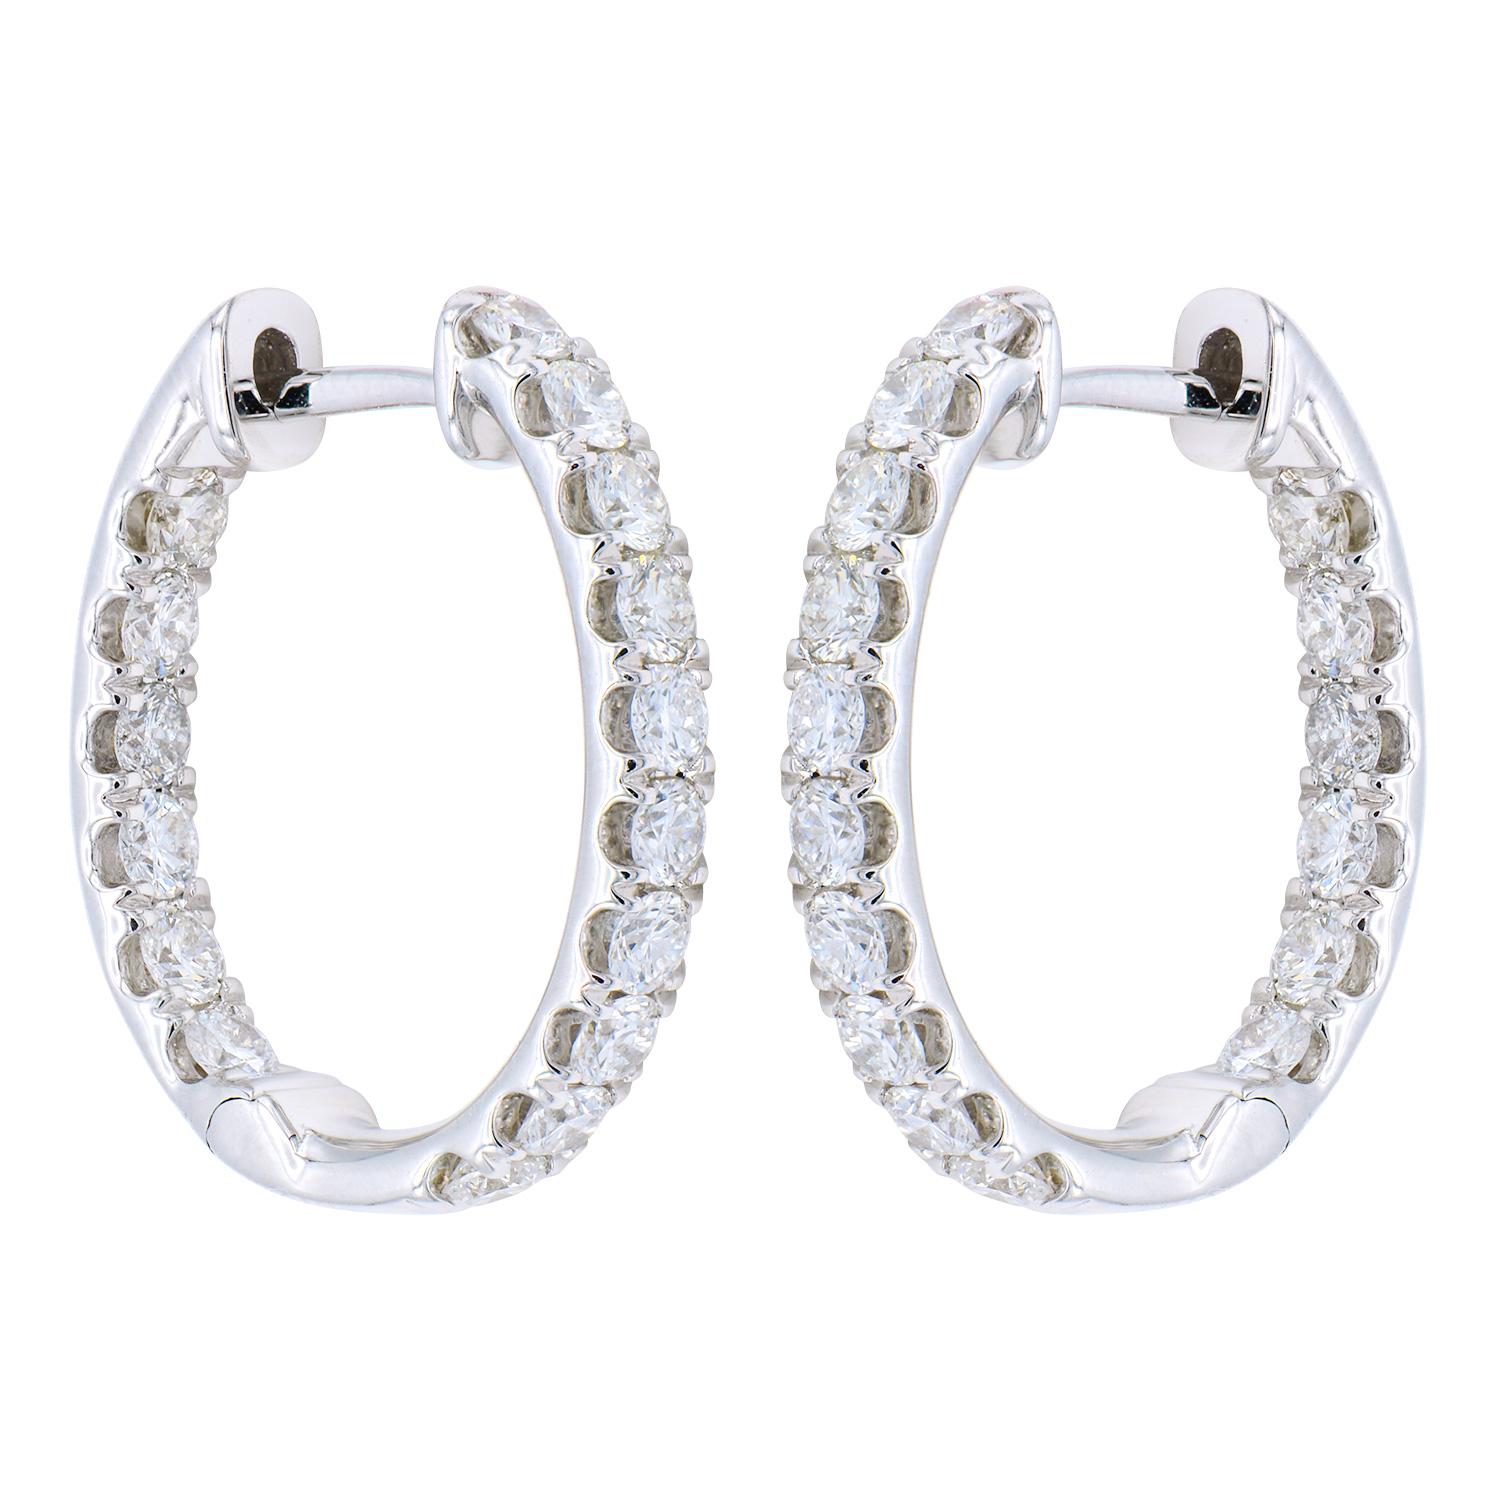 Contemporary 18 Karat White Gold Inside Outside Hoop Earrings For Sale